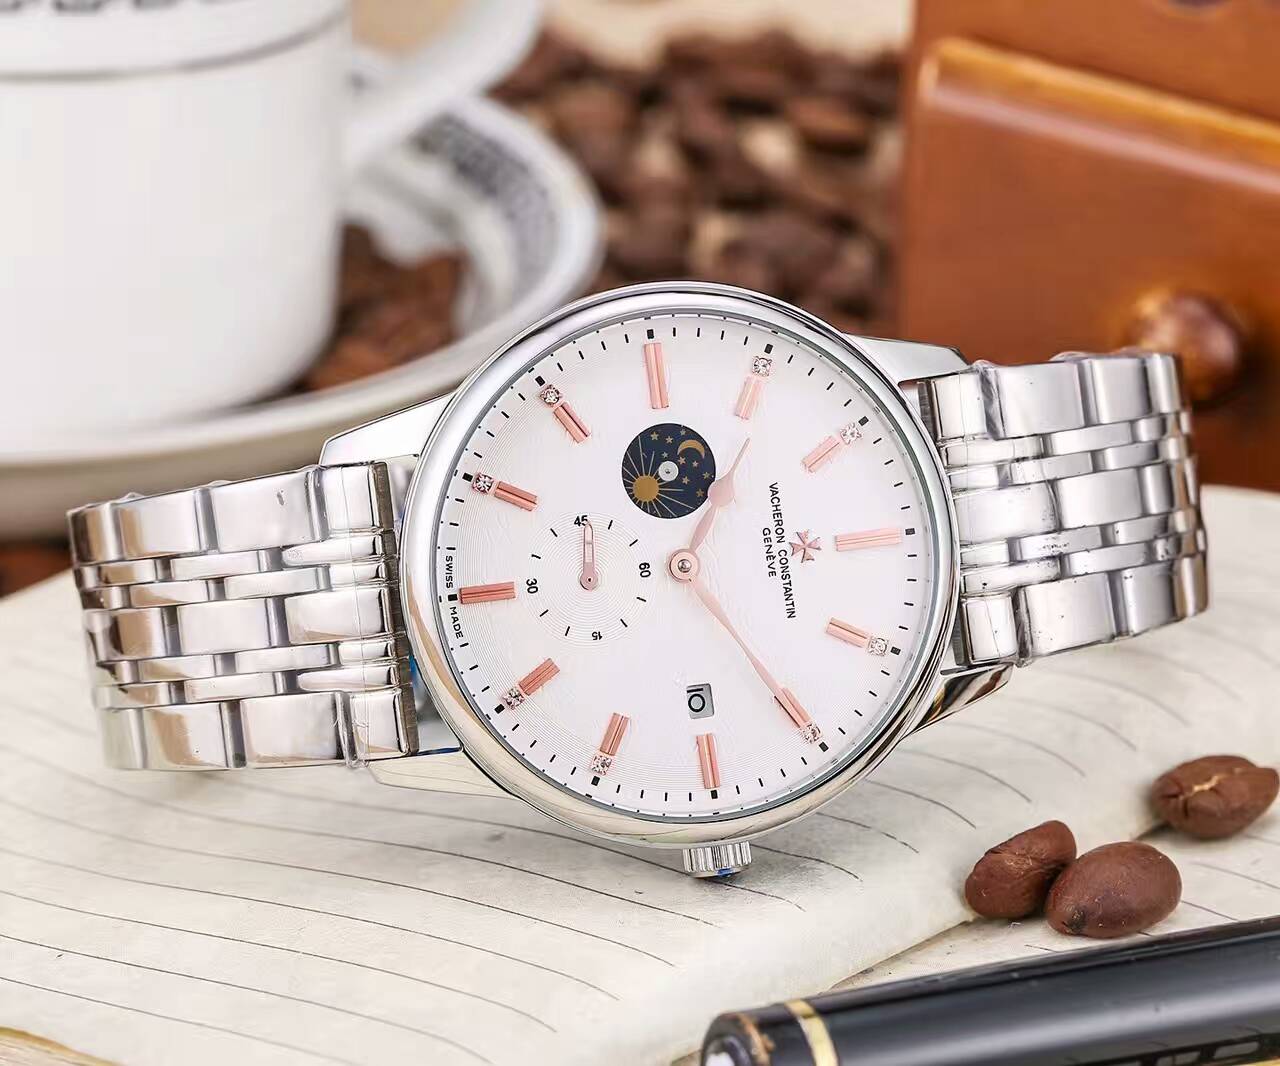 江詩丹頓 頂級機械機芯 礦物質超強鏡面 真牛皮錶帶 精湛品質 精品男士腕錶-rhid-117063